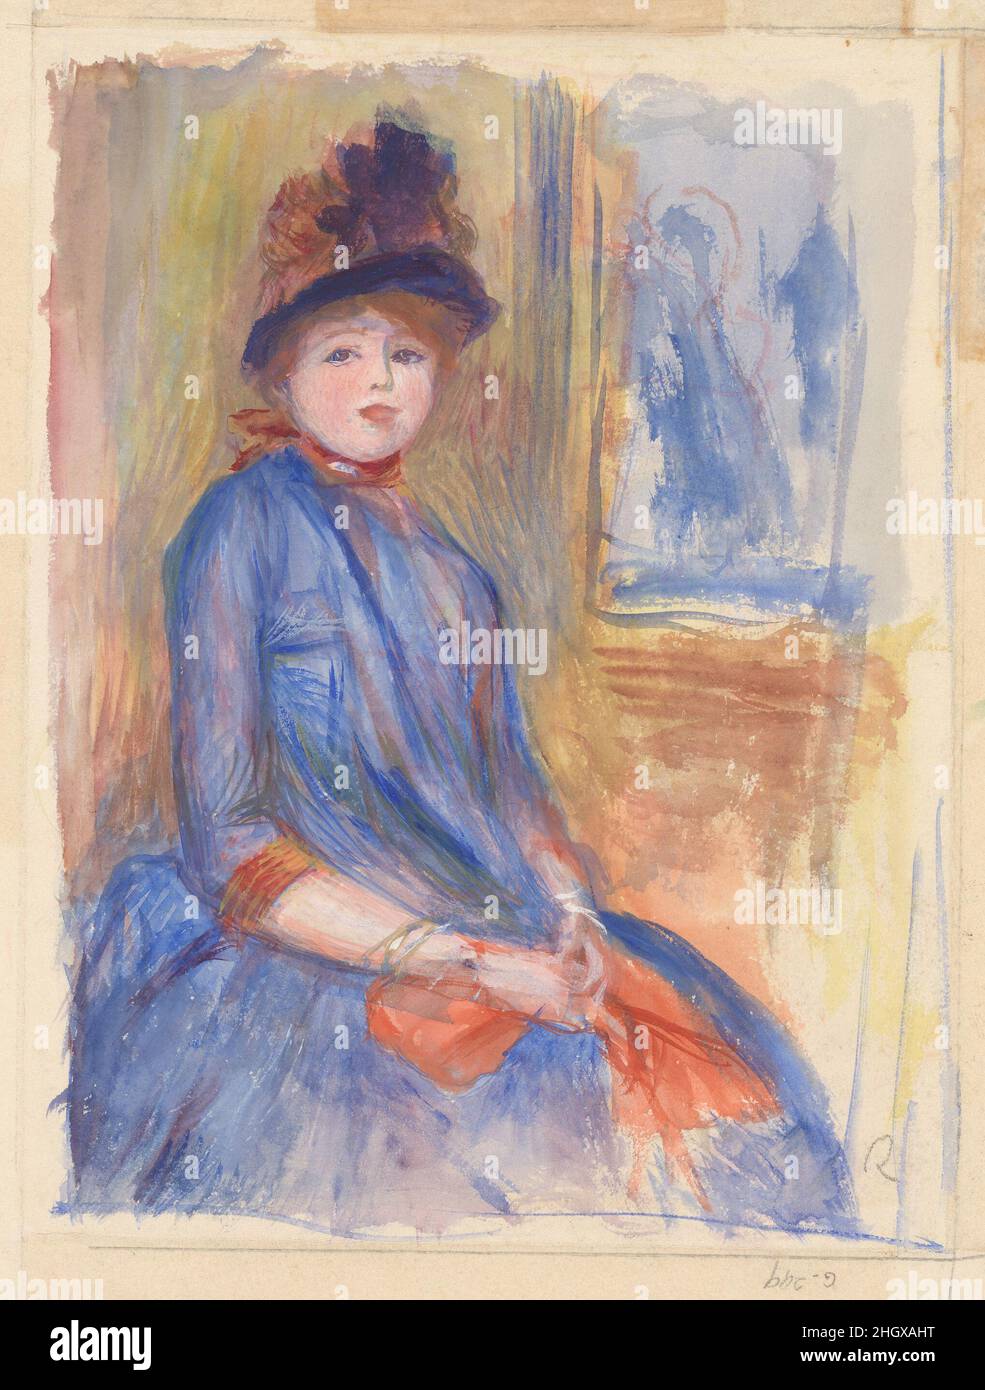 Jeune fille dans une robe bleue ca.1890 Auguste Renoir Français cette  aquarelle est un chef-d'œuvre de portraits spontanés.La superposition  précise d'aquarelles et de gouache crée des variations tonales délicates  dans le contexte